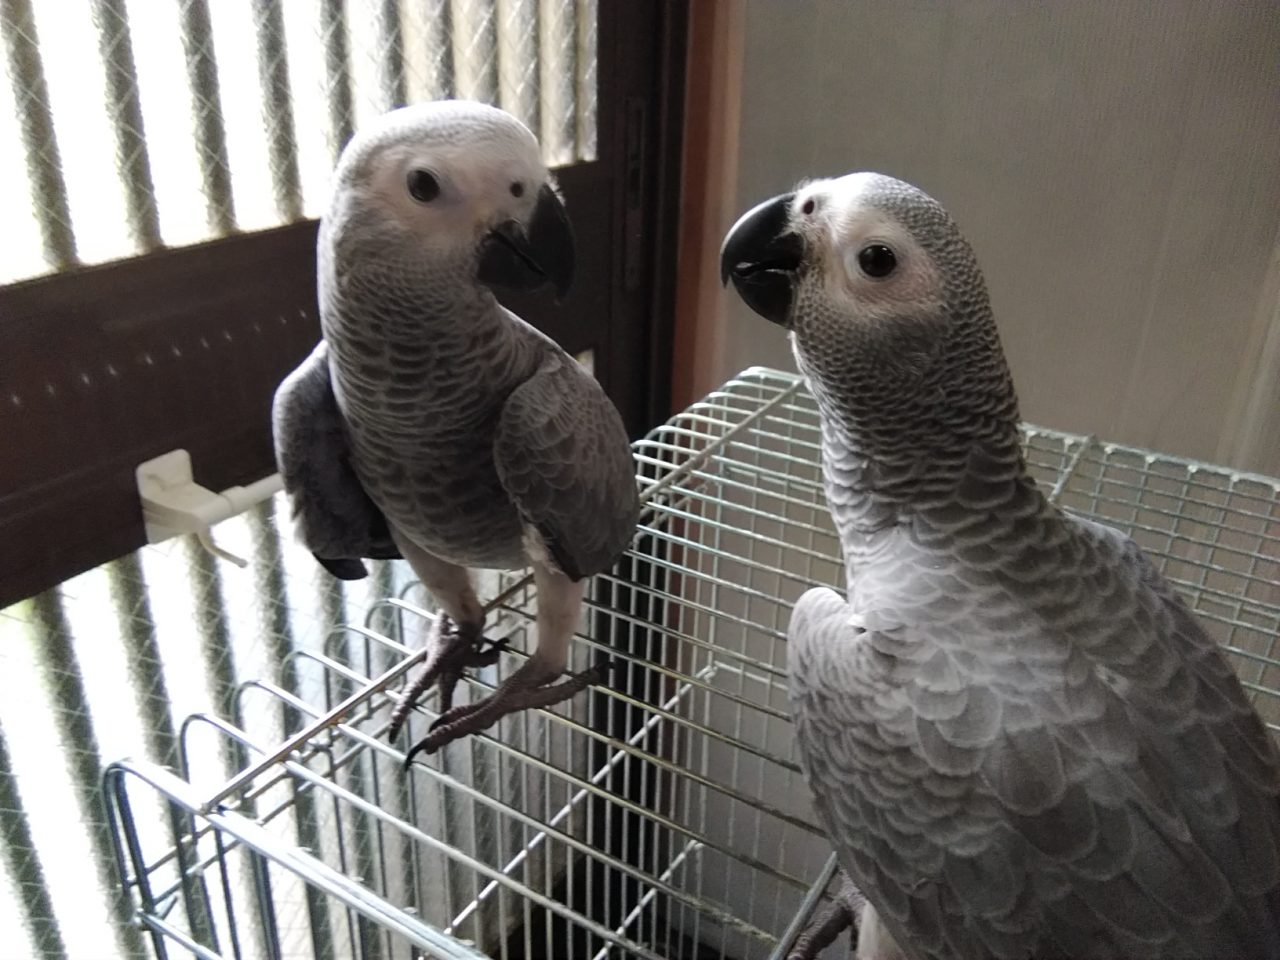 オキナインコとオカメインコヒナ入荷９月ヨウム入荷予定 京都の小鳥店 インコ オウム 小鳥 Bird Shop Ten